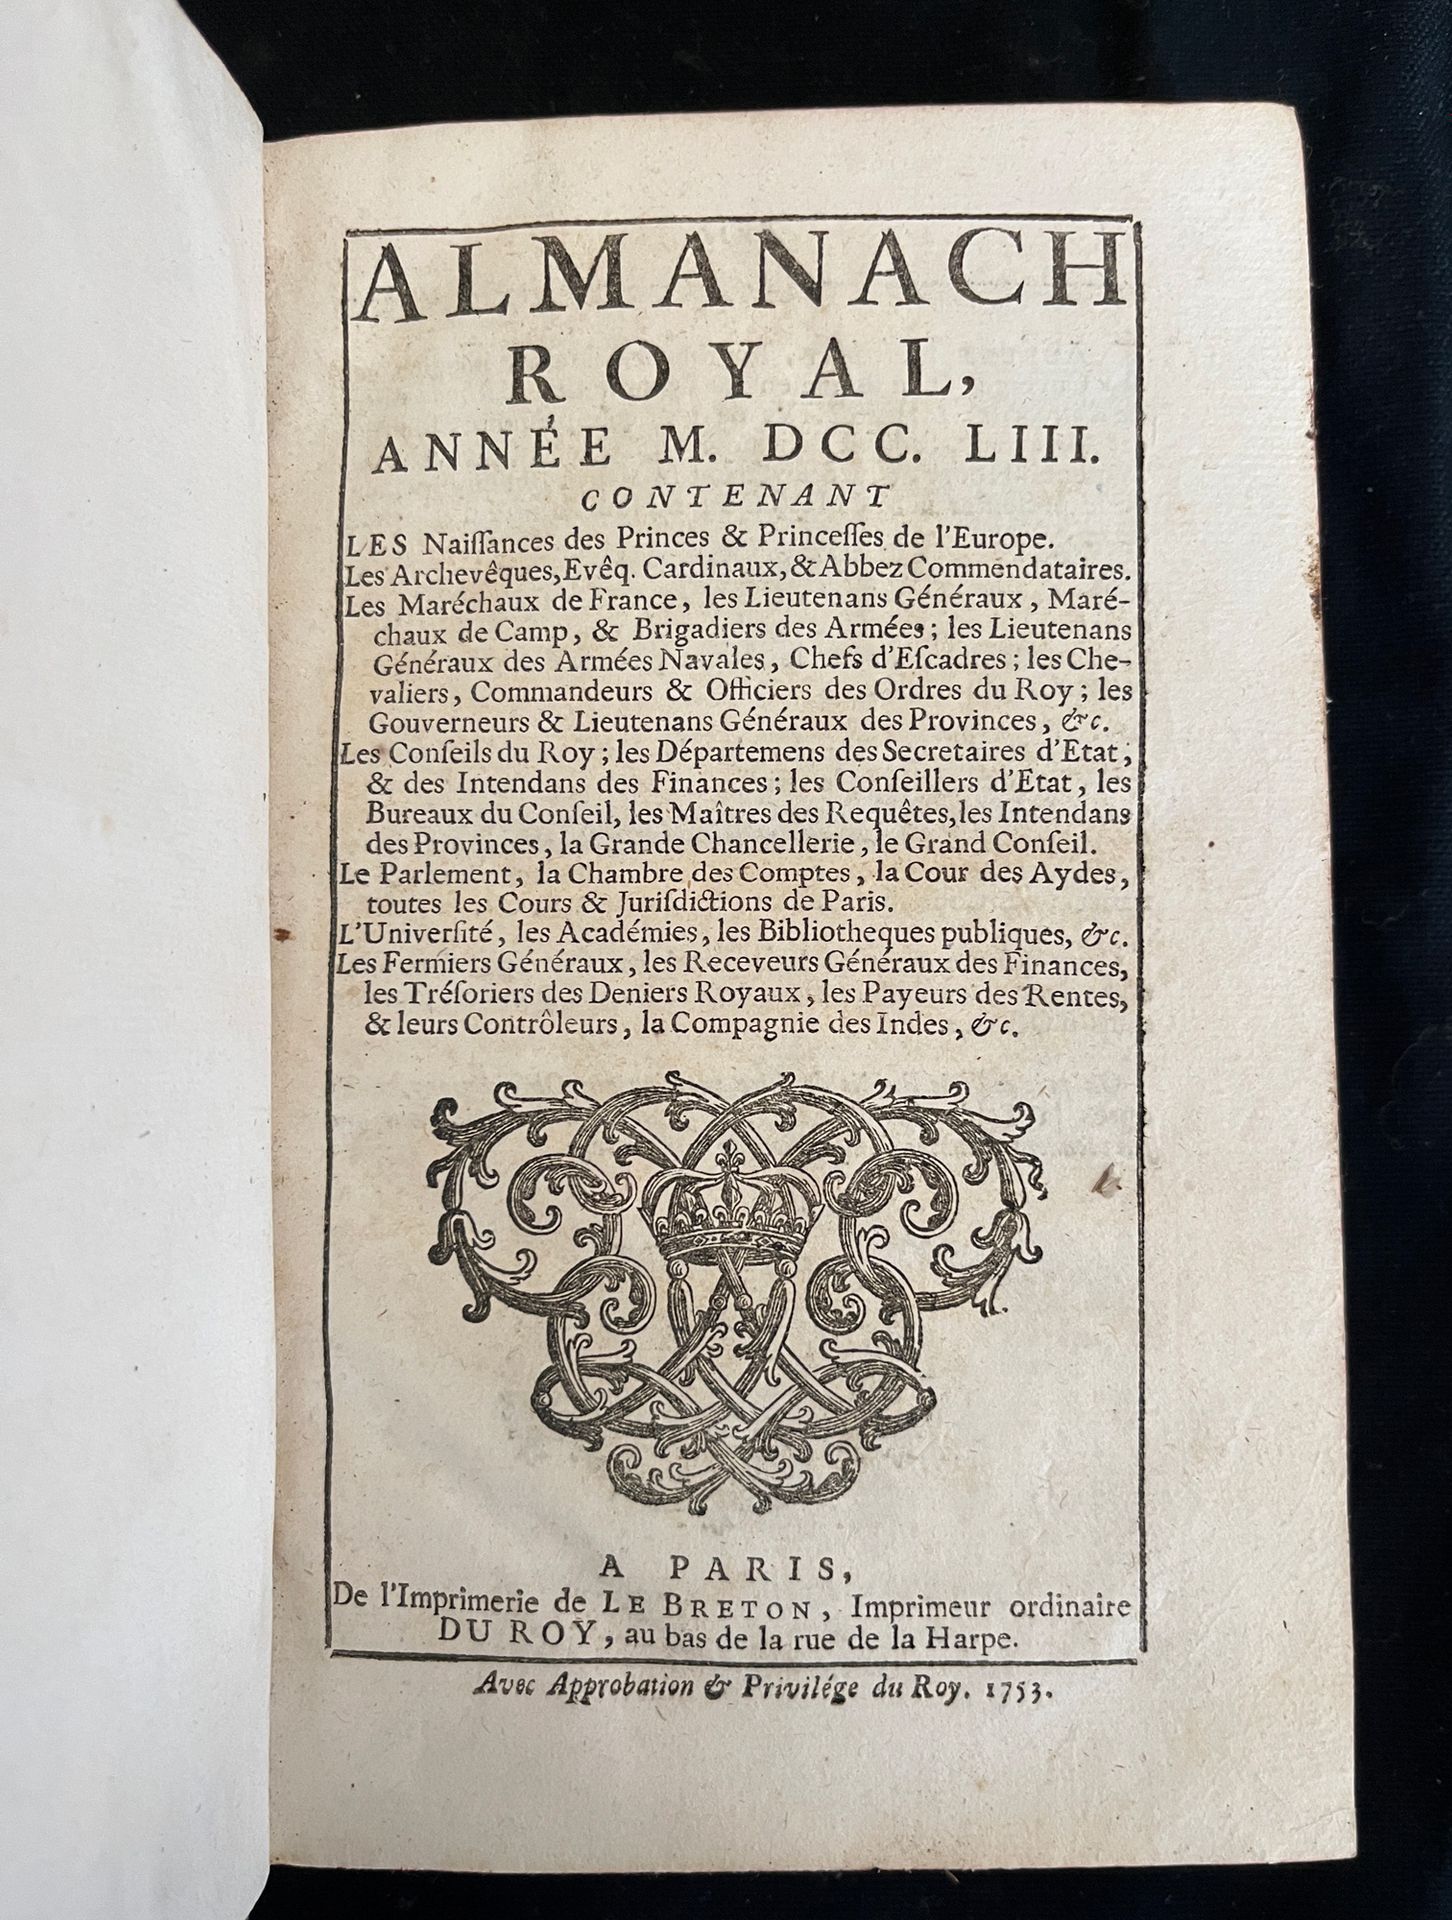 Null [ALMANACH]
Almanach royal pour l'an MDCCLIII. Paris, chez Le Breton rue de &hellip;